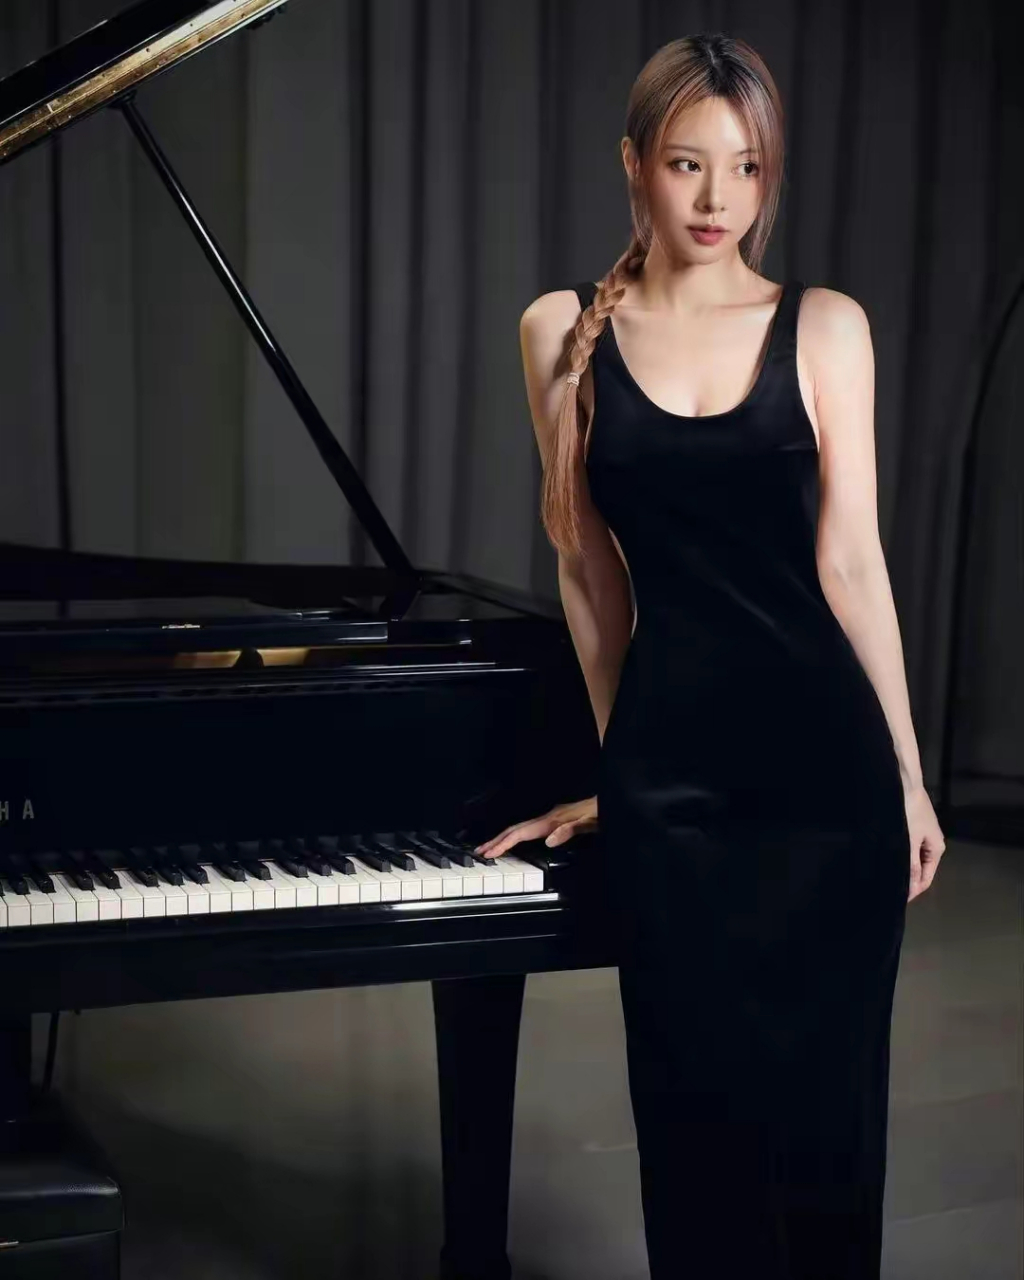 印象中,钢琴家都是温文尔雅,尤其是女性,更是应该淡然恬静的,是那种